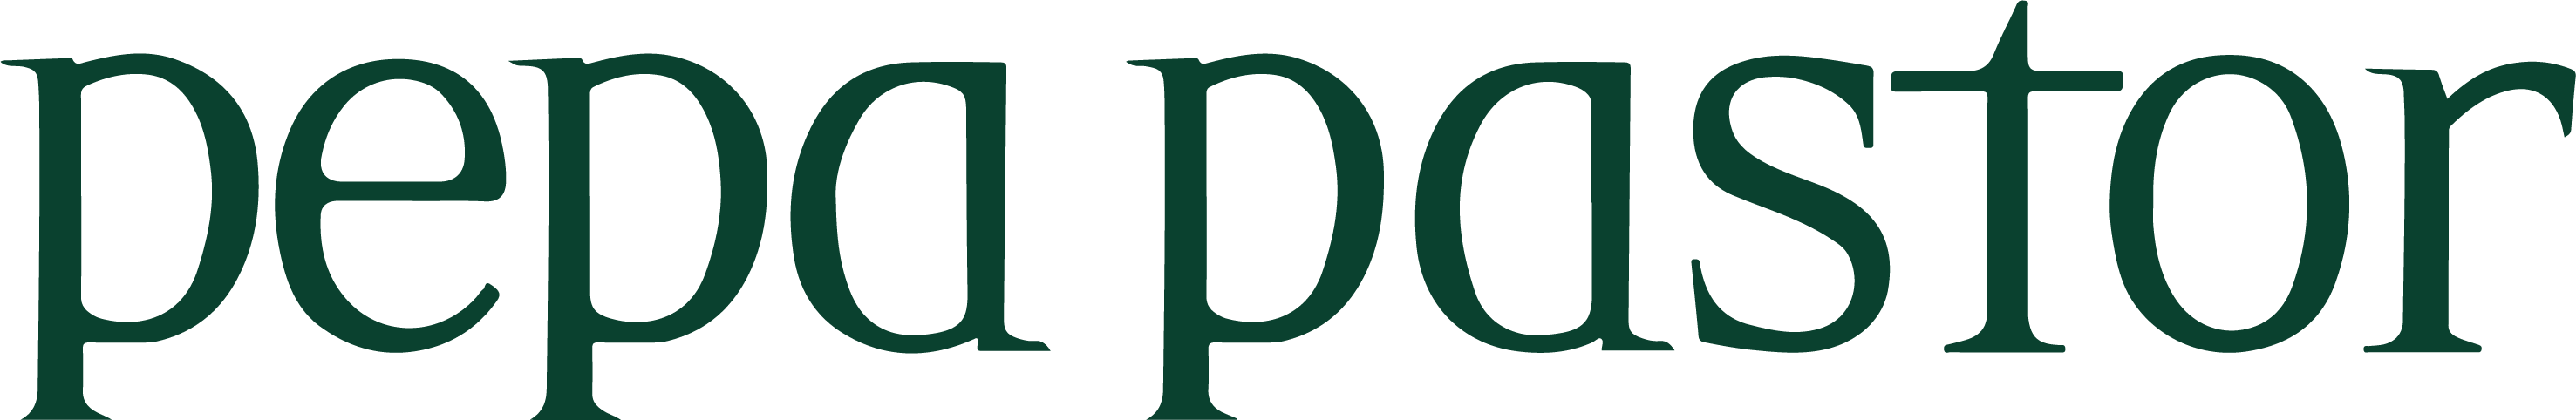 Logotipo de Pepapastor